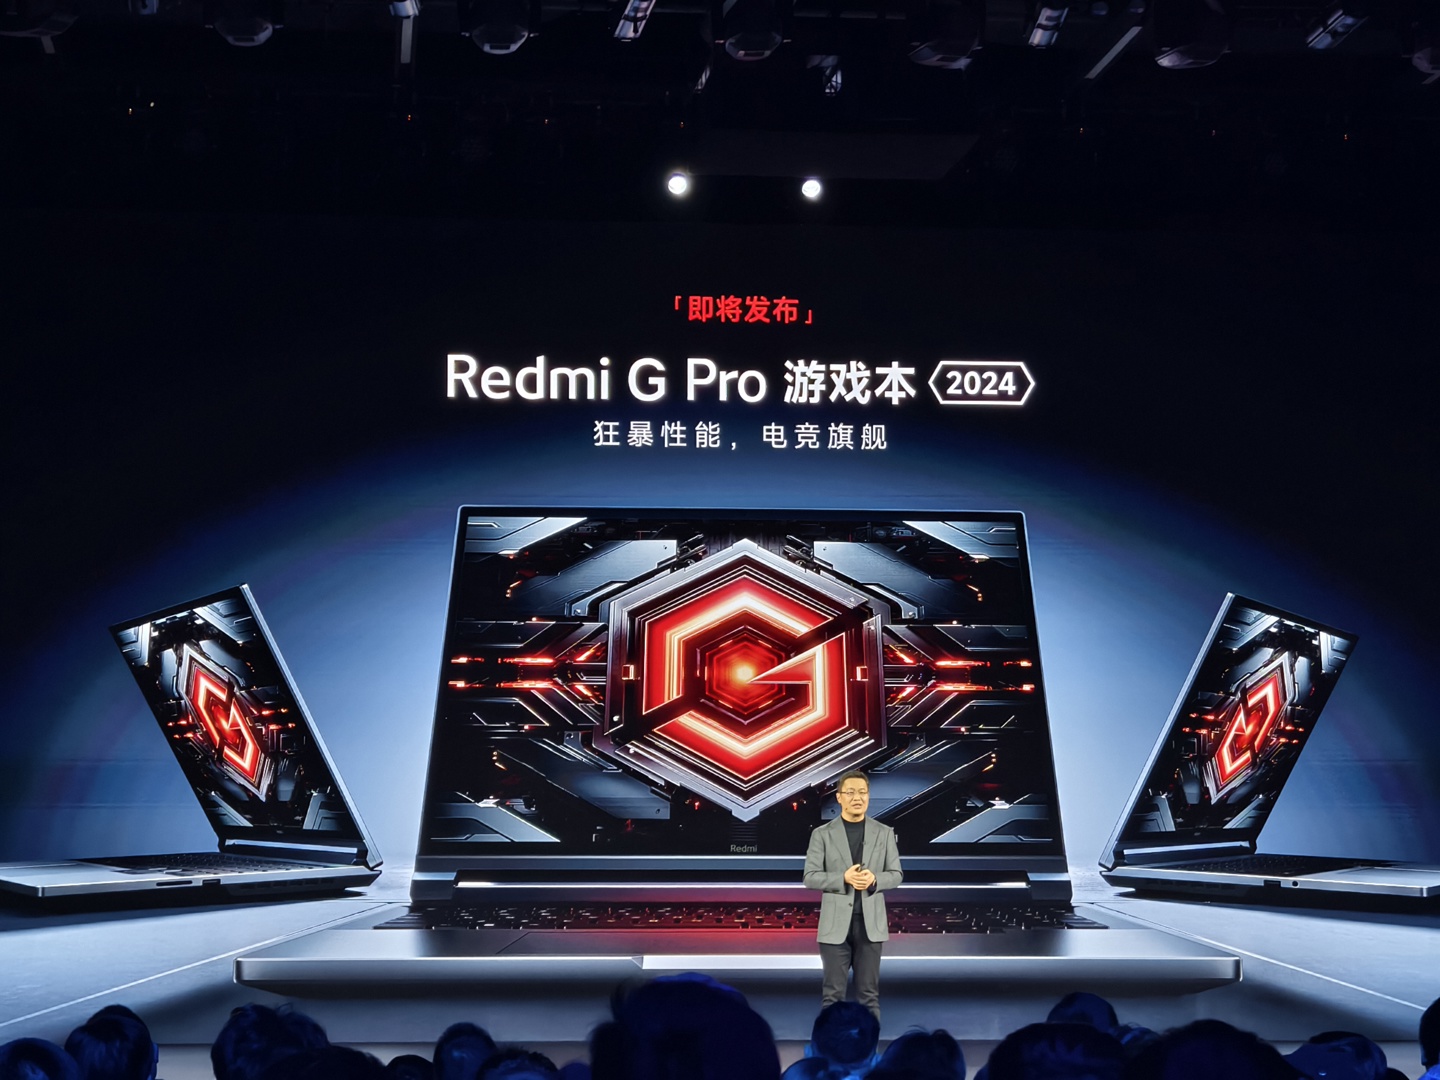 小米后续发布 Redmi G Pro 2024 游戏本	，号称“万元内最强	”- 第 1 张图片 - 新易生活风水网